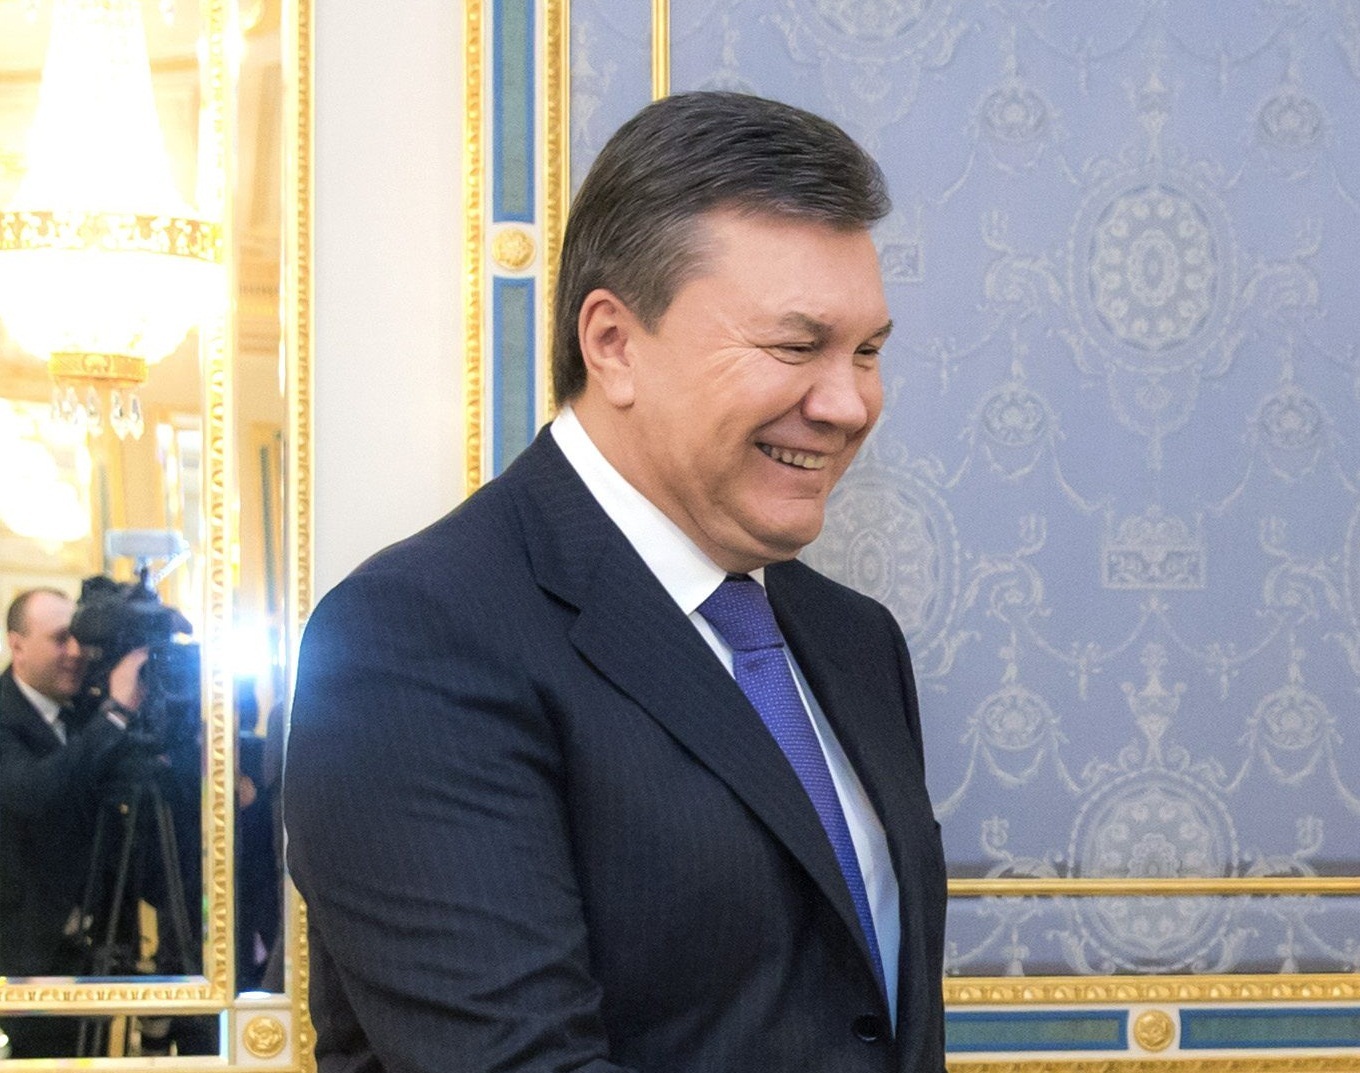 Συνταγματική μεταρρύθμιση “το συντομότερο δυνατό” υπόσχεται ο Γιανουκόβιτς